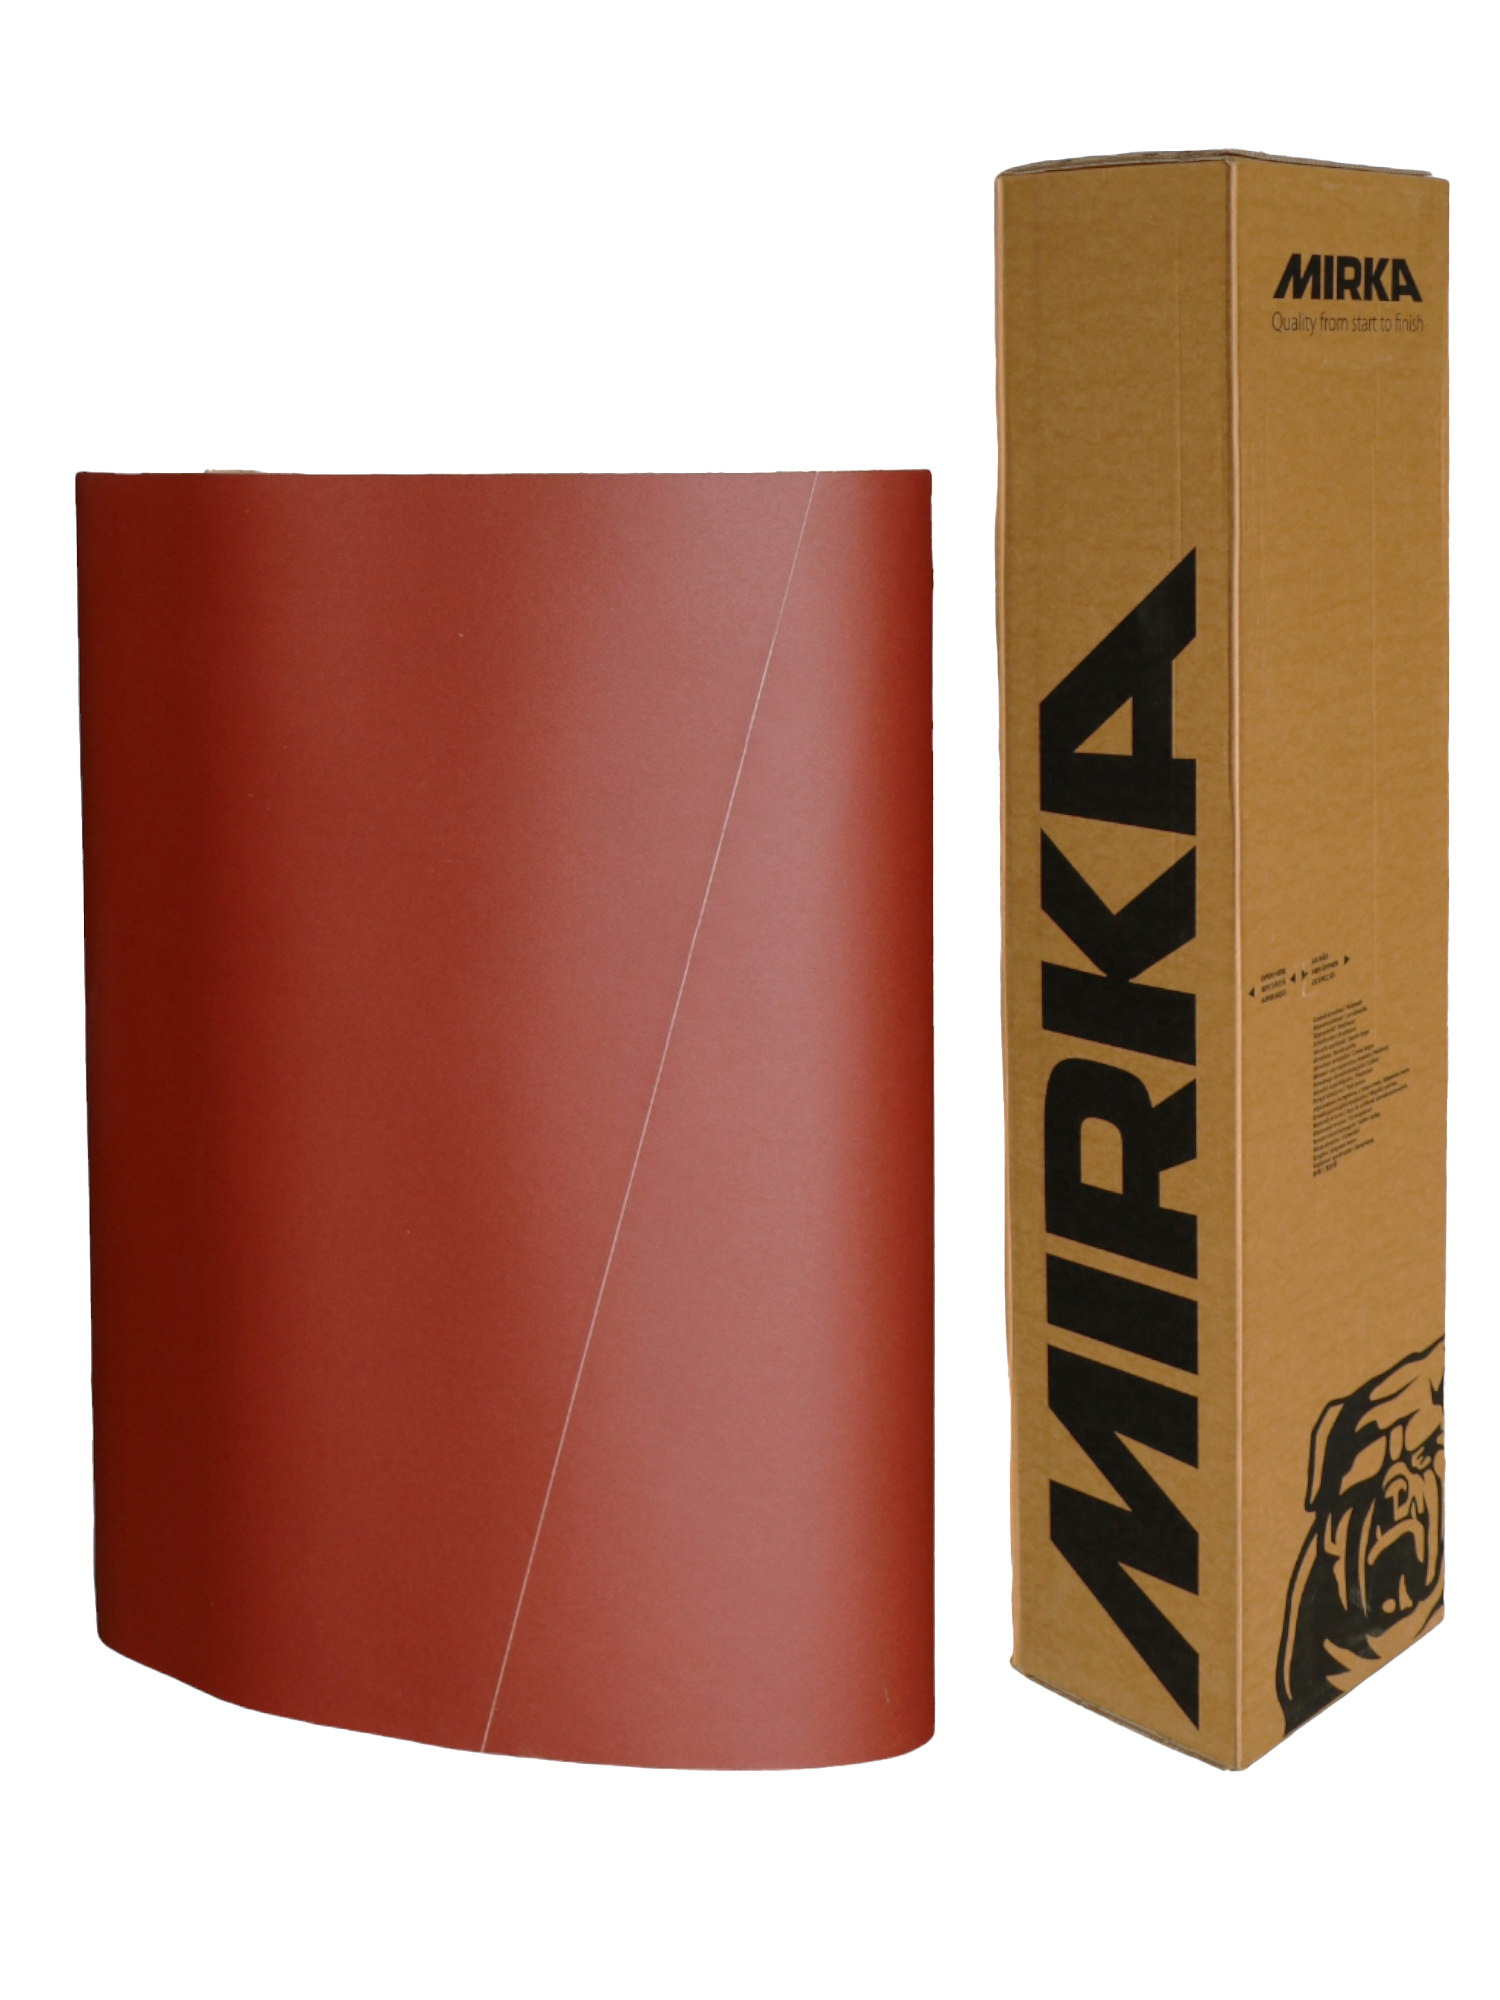 Abbildung Mirka Jepuflex 1120x1900mm Breitband aufgestellt mit Verpackung